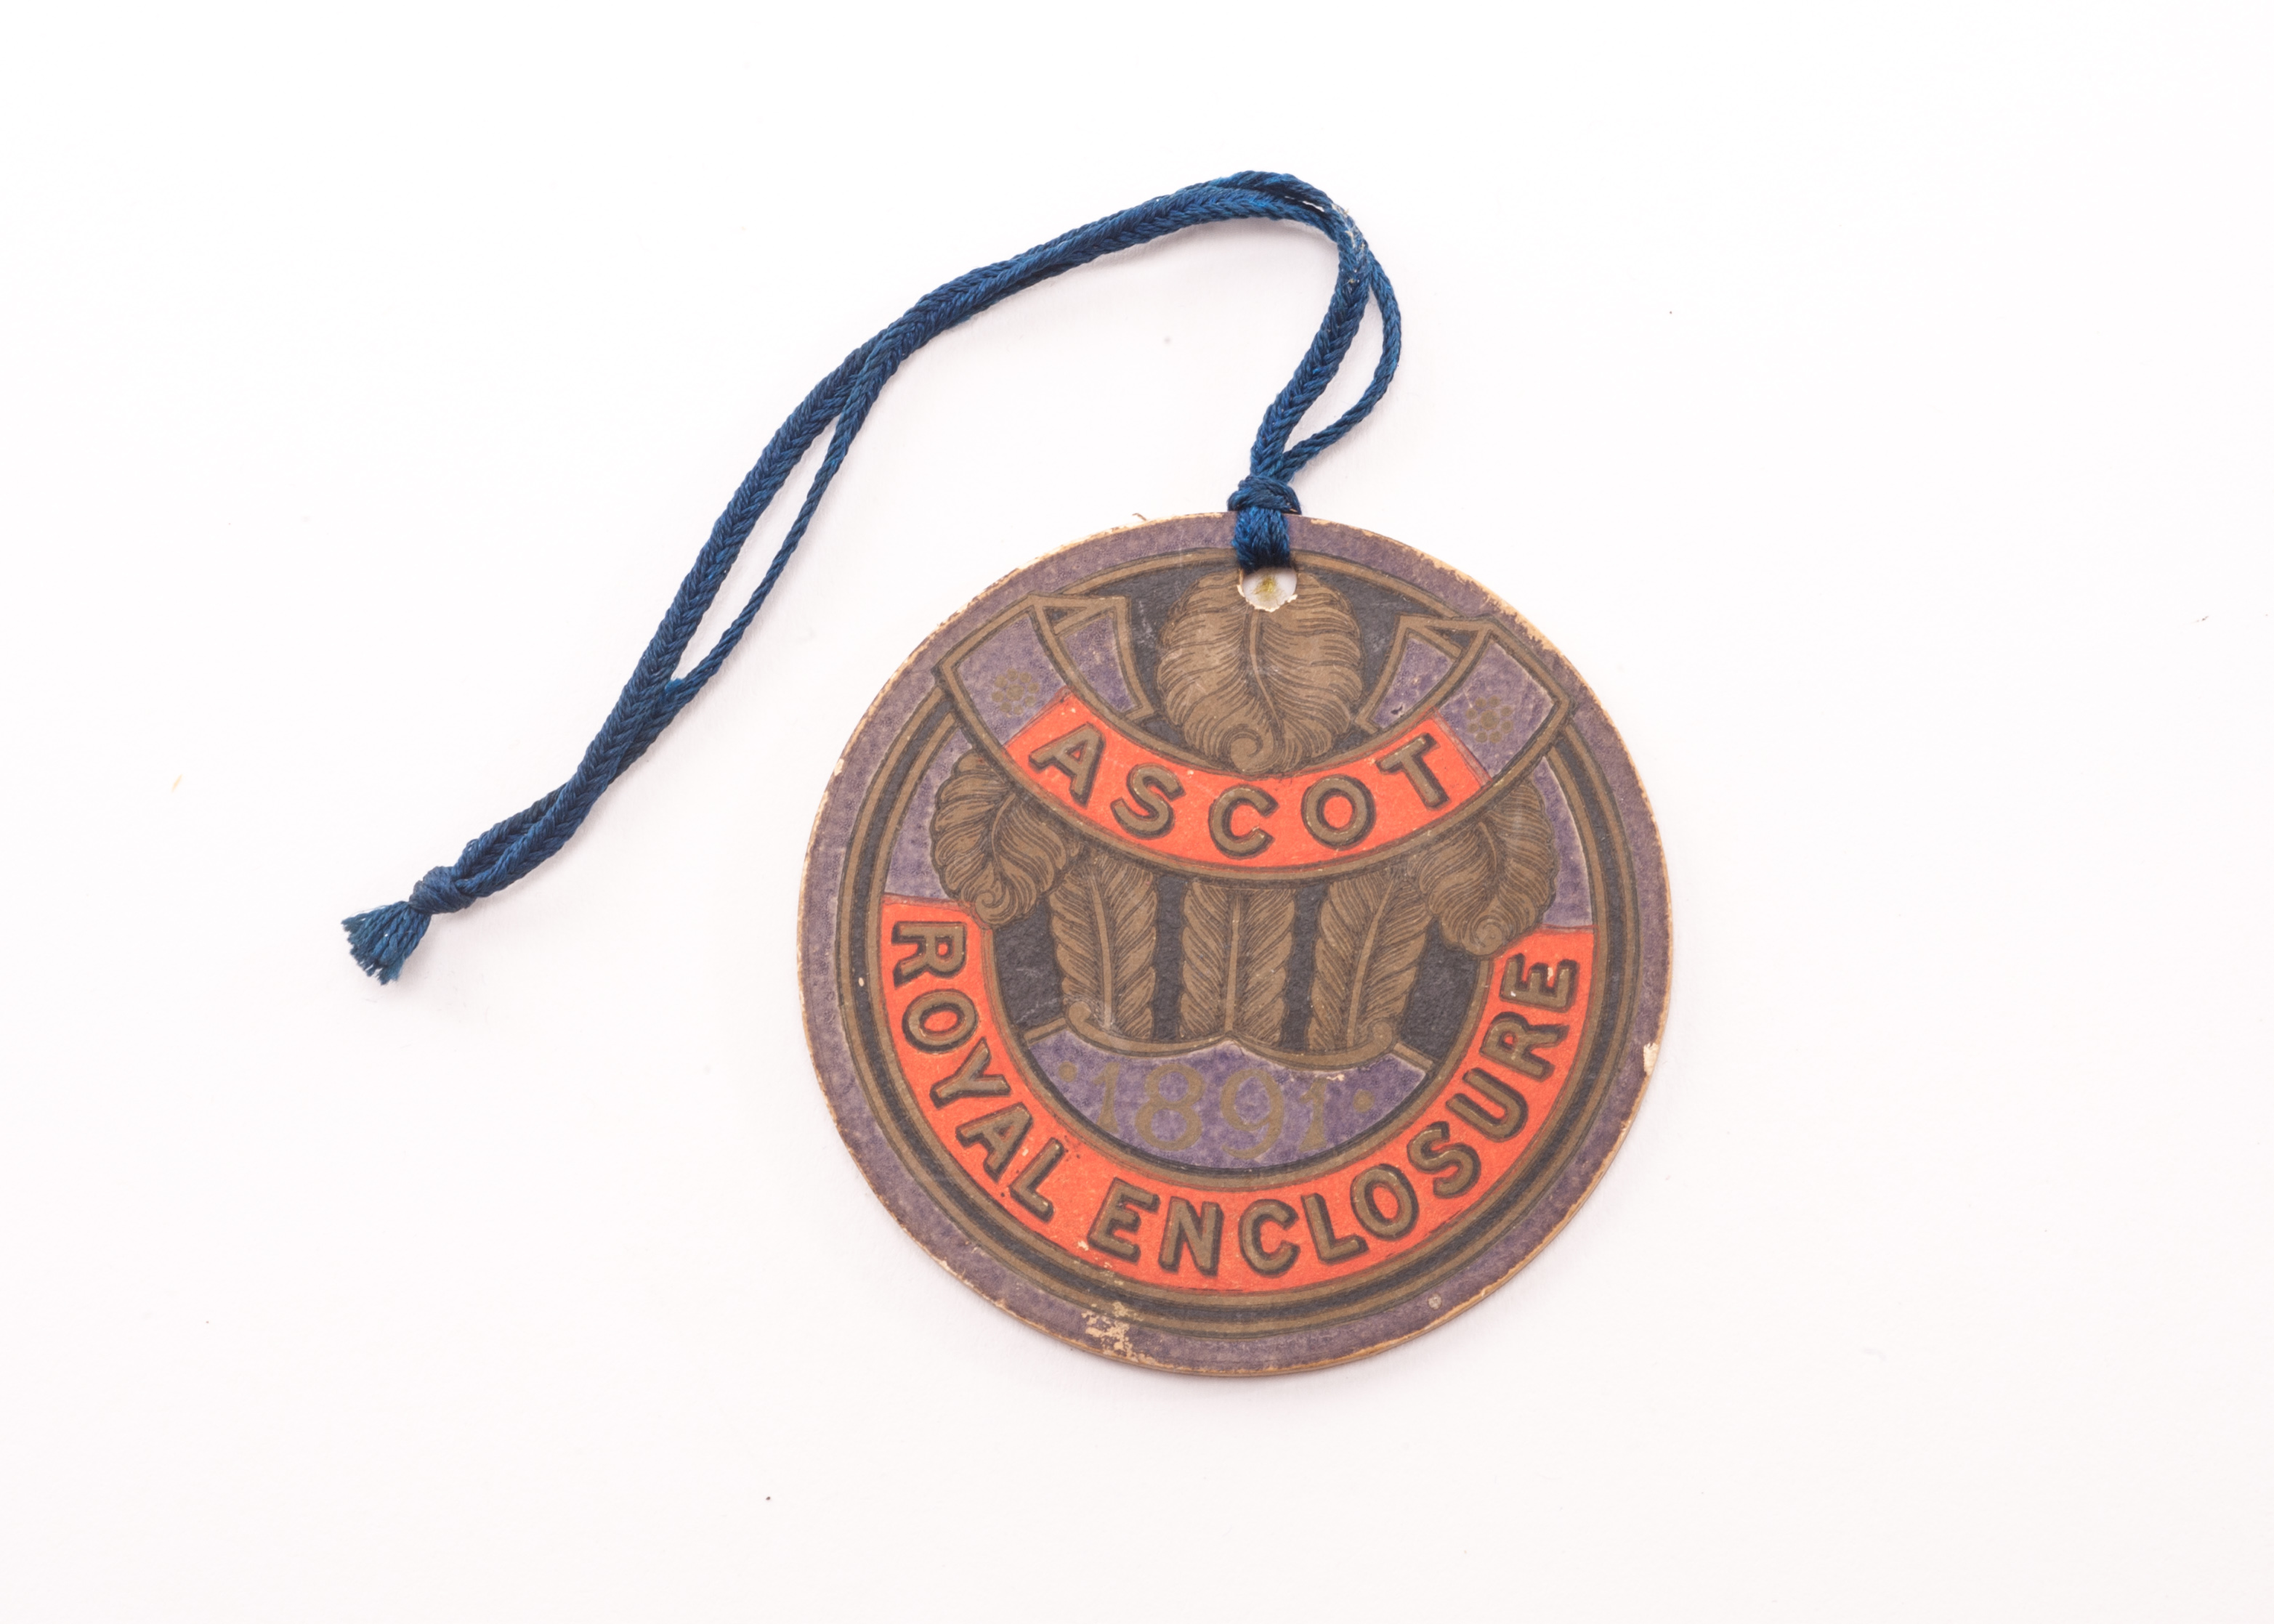 Horseracing: Royal Ascot Royal Enclosure badge, circular card badge with black cord, undated but